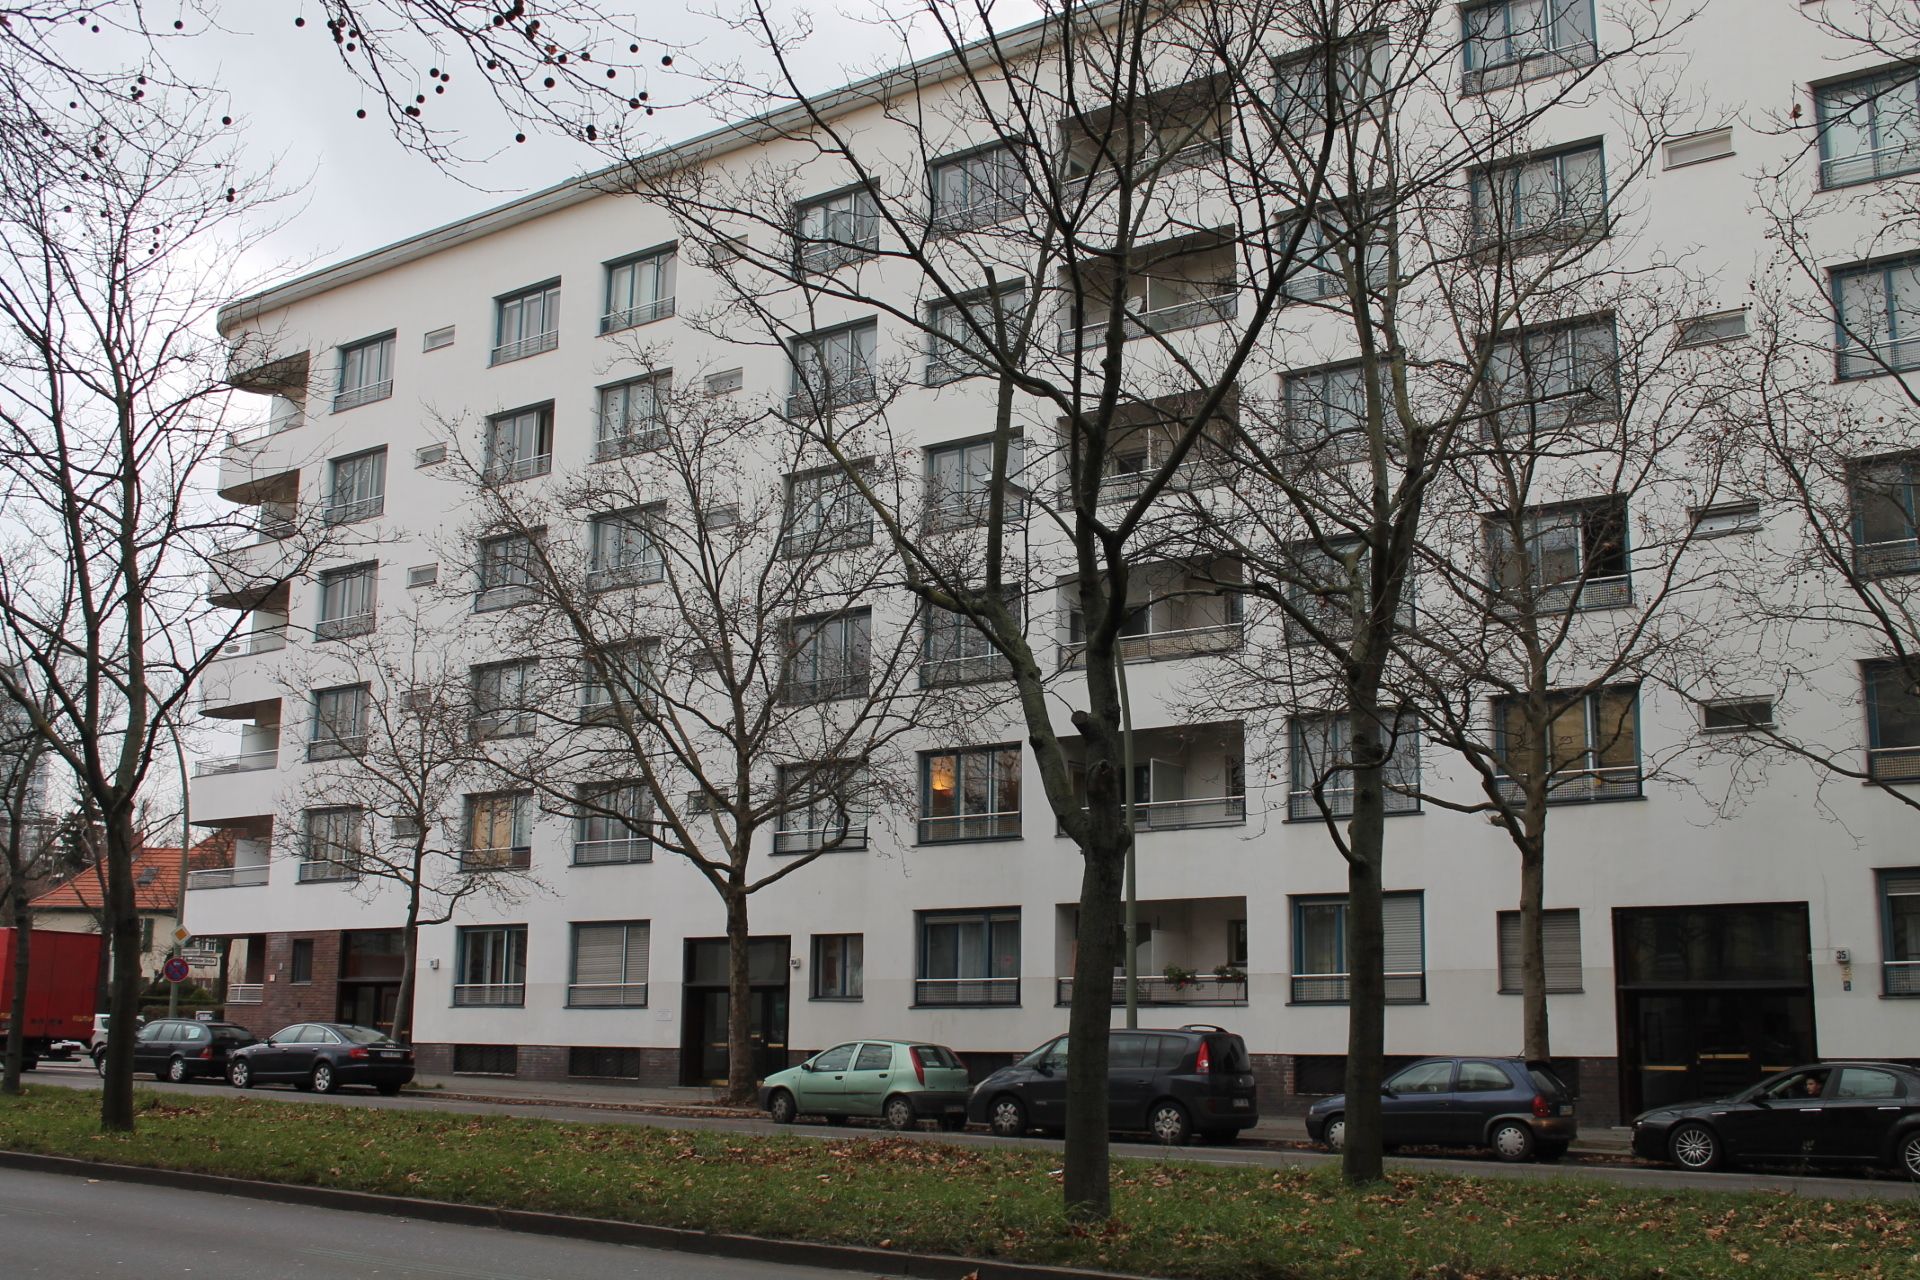 Apartmenthaus von Scharoun und Jacobowitz, Kiezspaziergang 12.12.2015